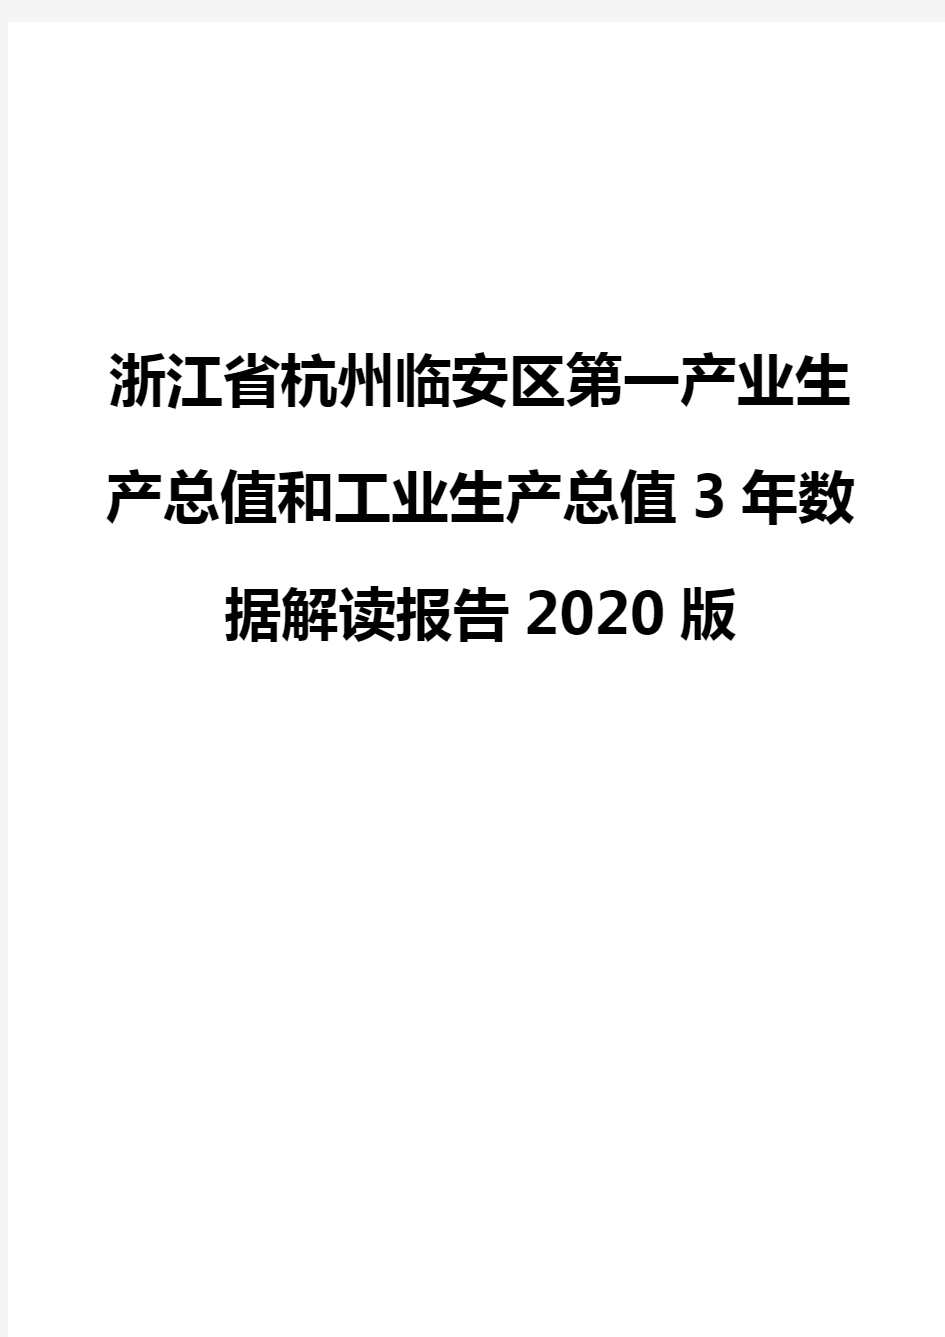 浙江省杭州临安区第一产业生产总值和工业生产总值3年数据解读报告2020版